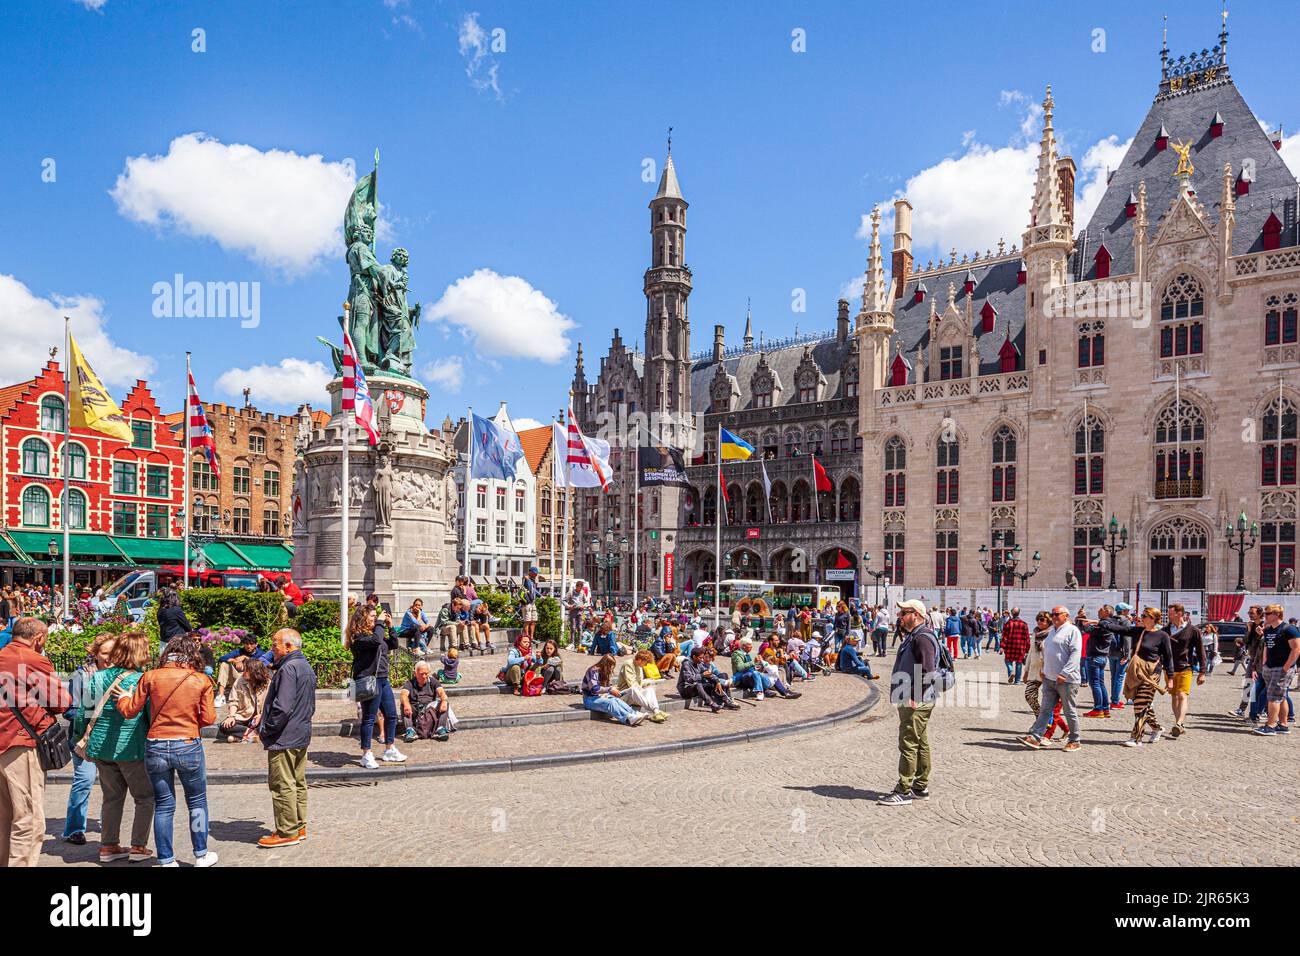 Les statues de Jan Breydel et Pieter de Coninck et du Provinciaal Hof (province court) sur la place Markt à Bruges, en Belgique Banque D'Images